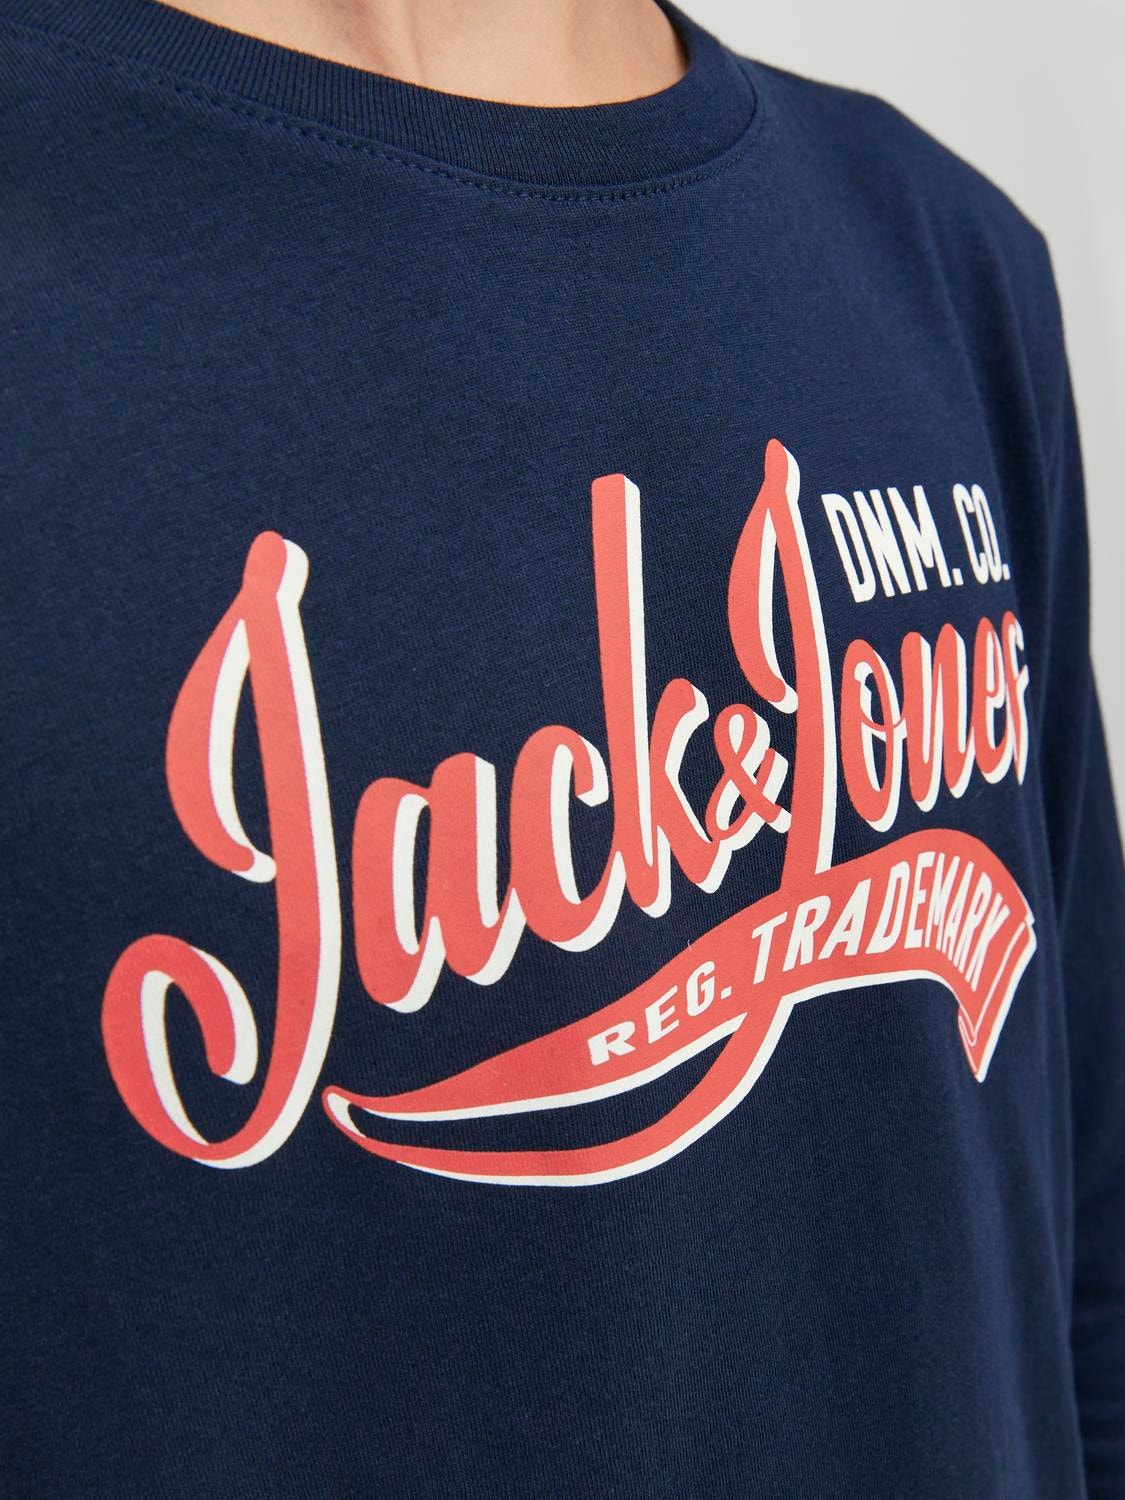 Jack & Jones Logo T-shirt Für jungs -Navy Blazer - 12237371